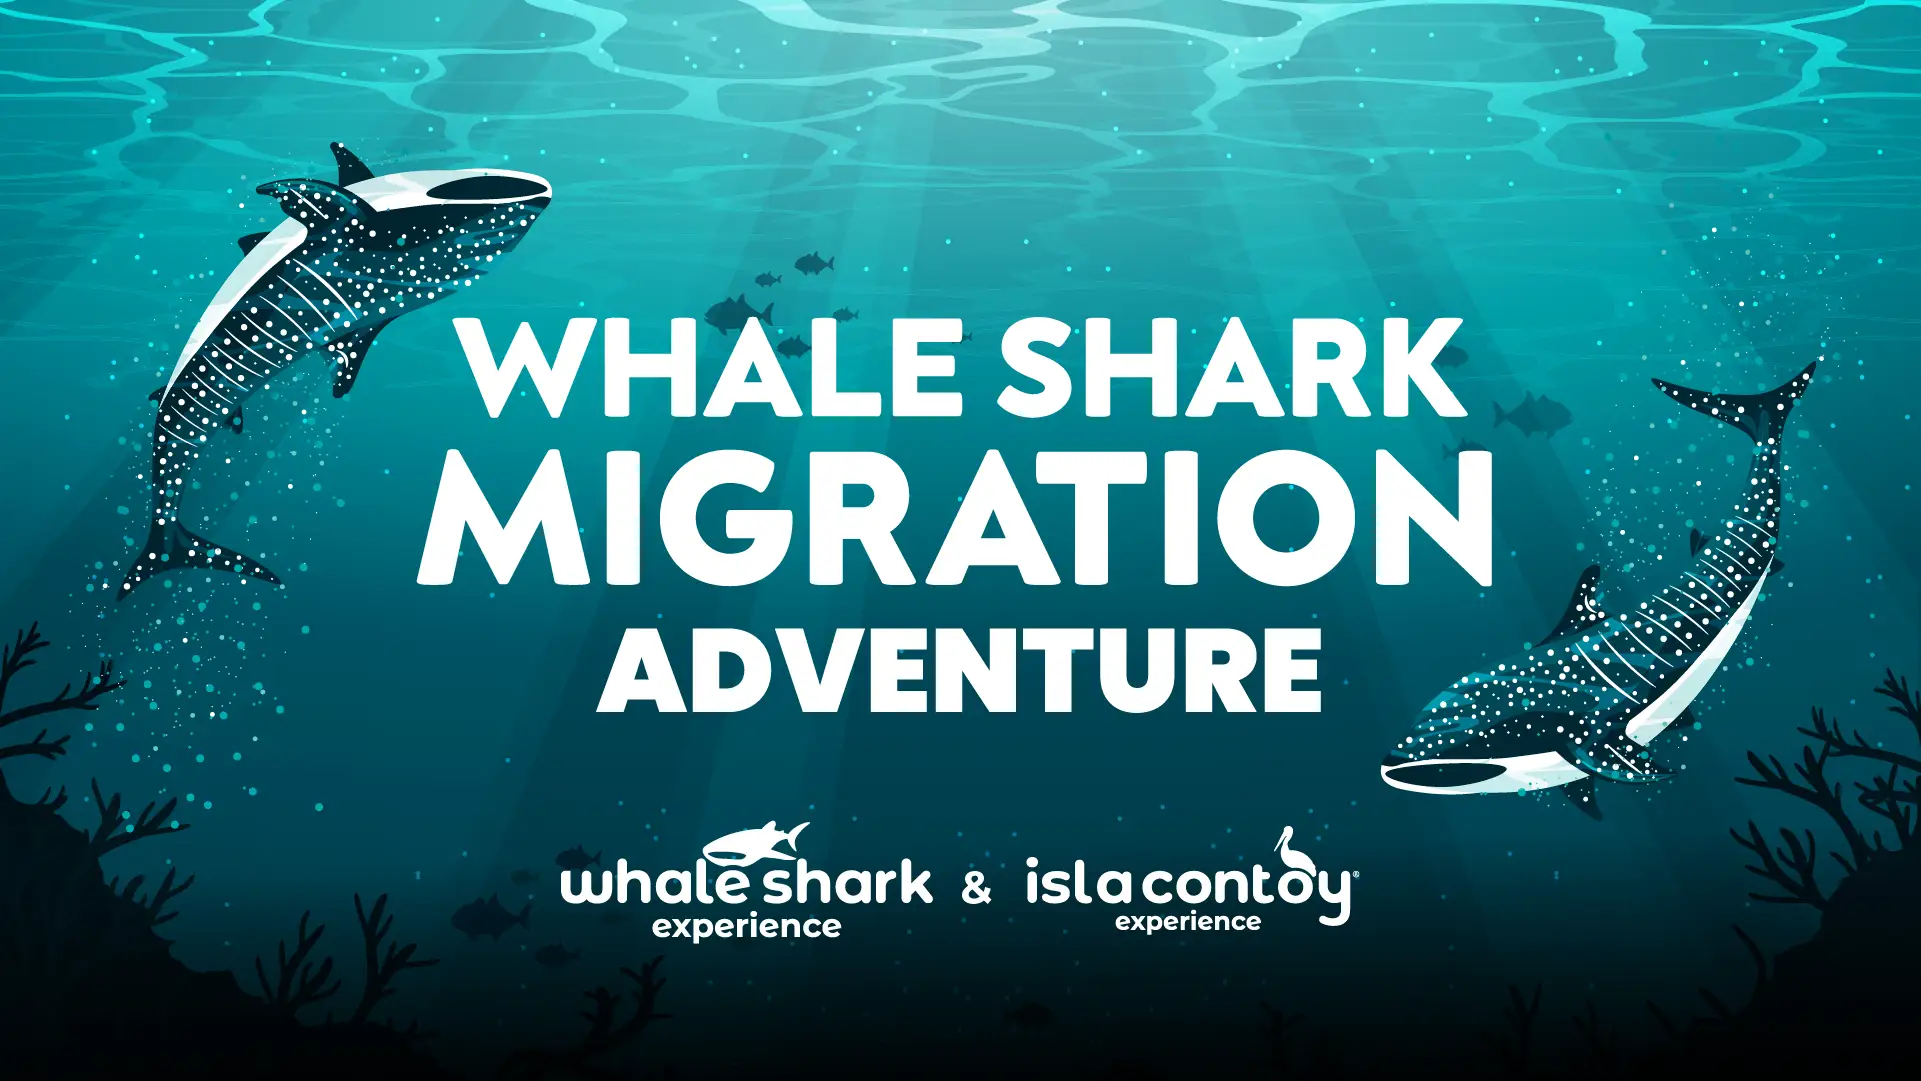 Whale shark migration adventure